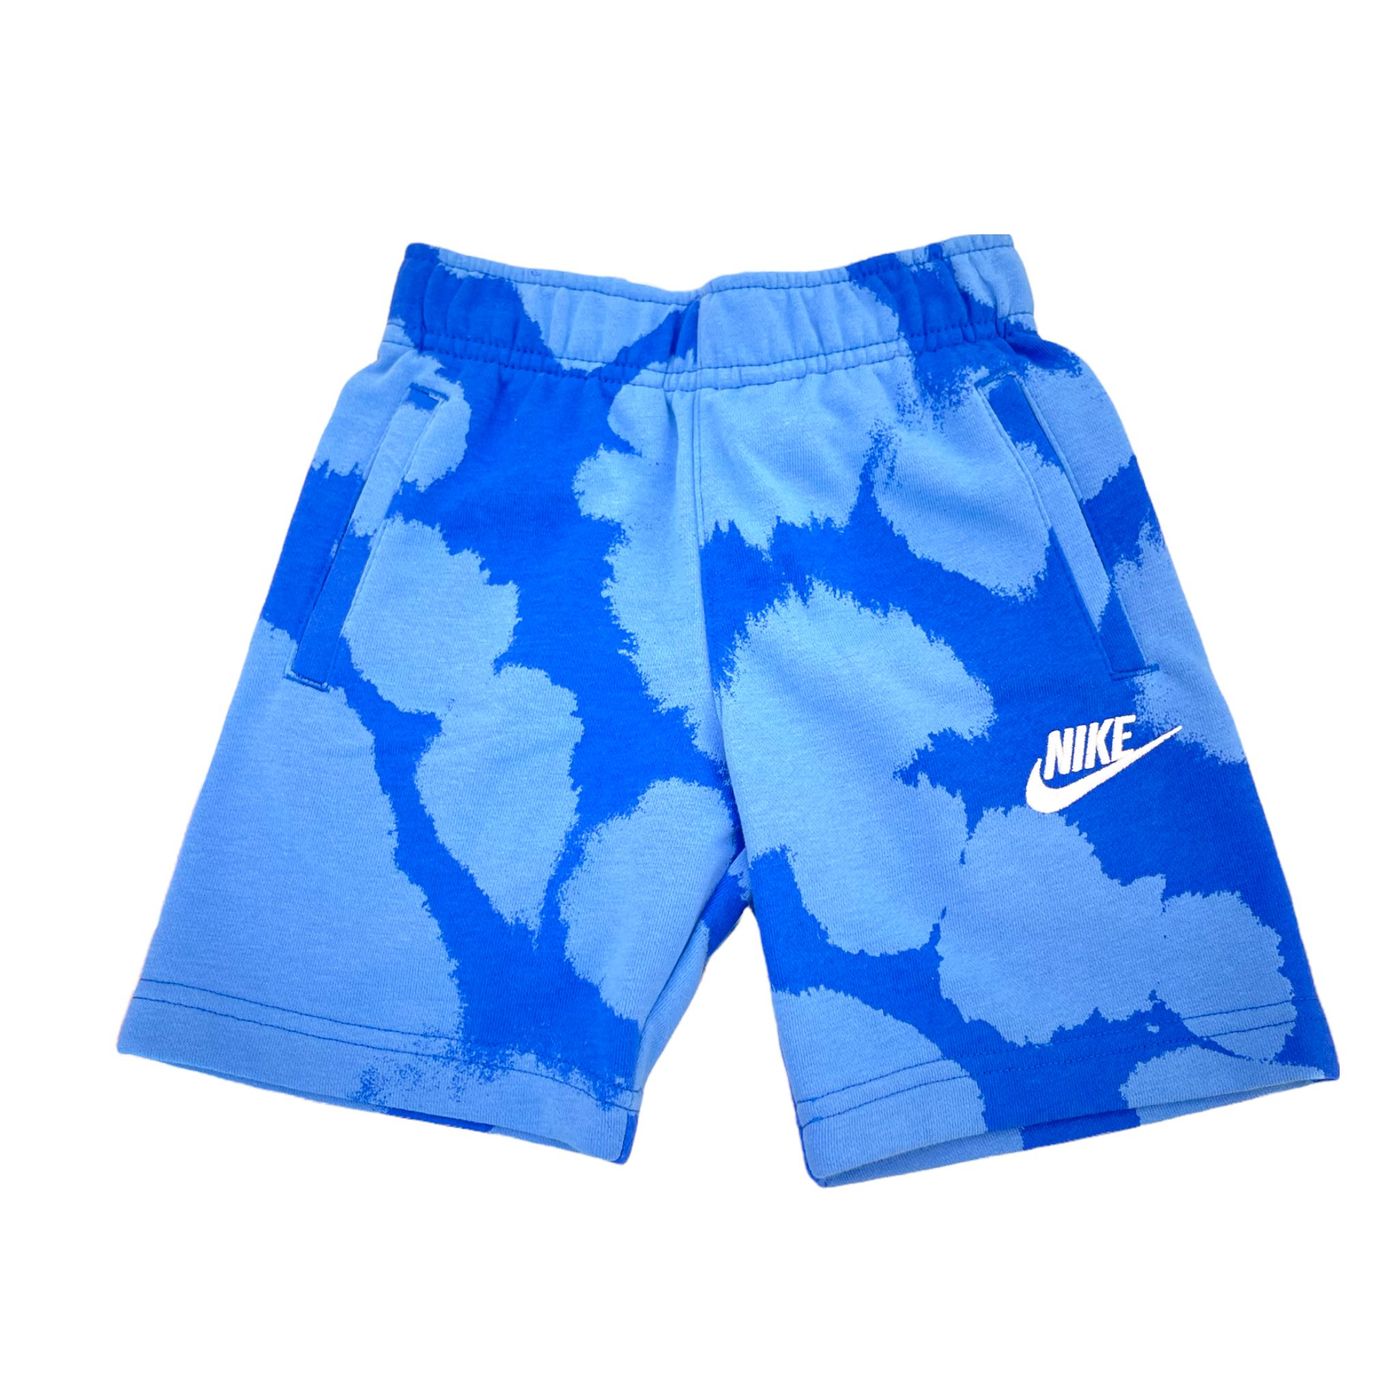 86J522-U89 - Shorts - Nike